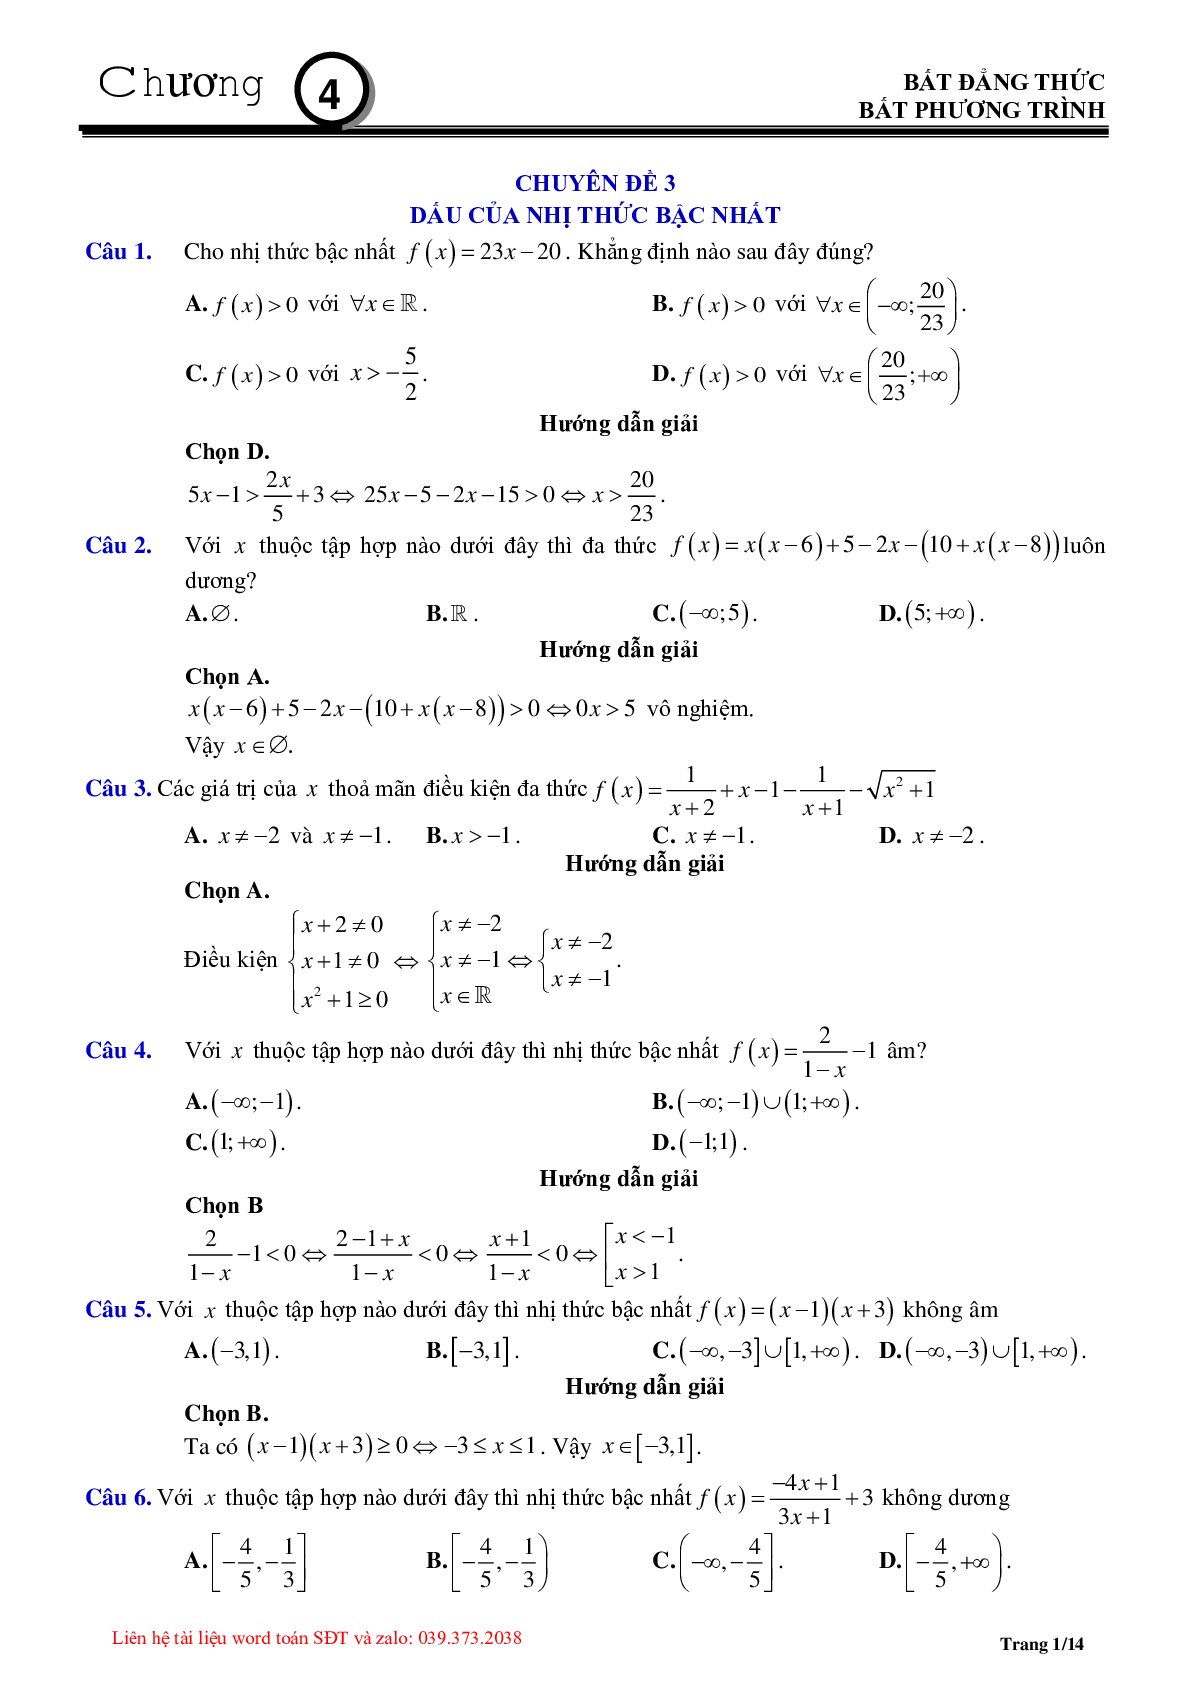 Chuyên đề dấu của nhị thức bậc nhất (trang 1)